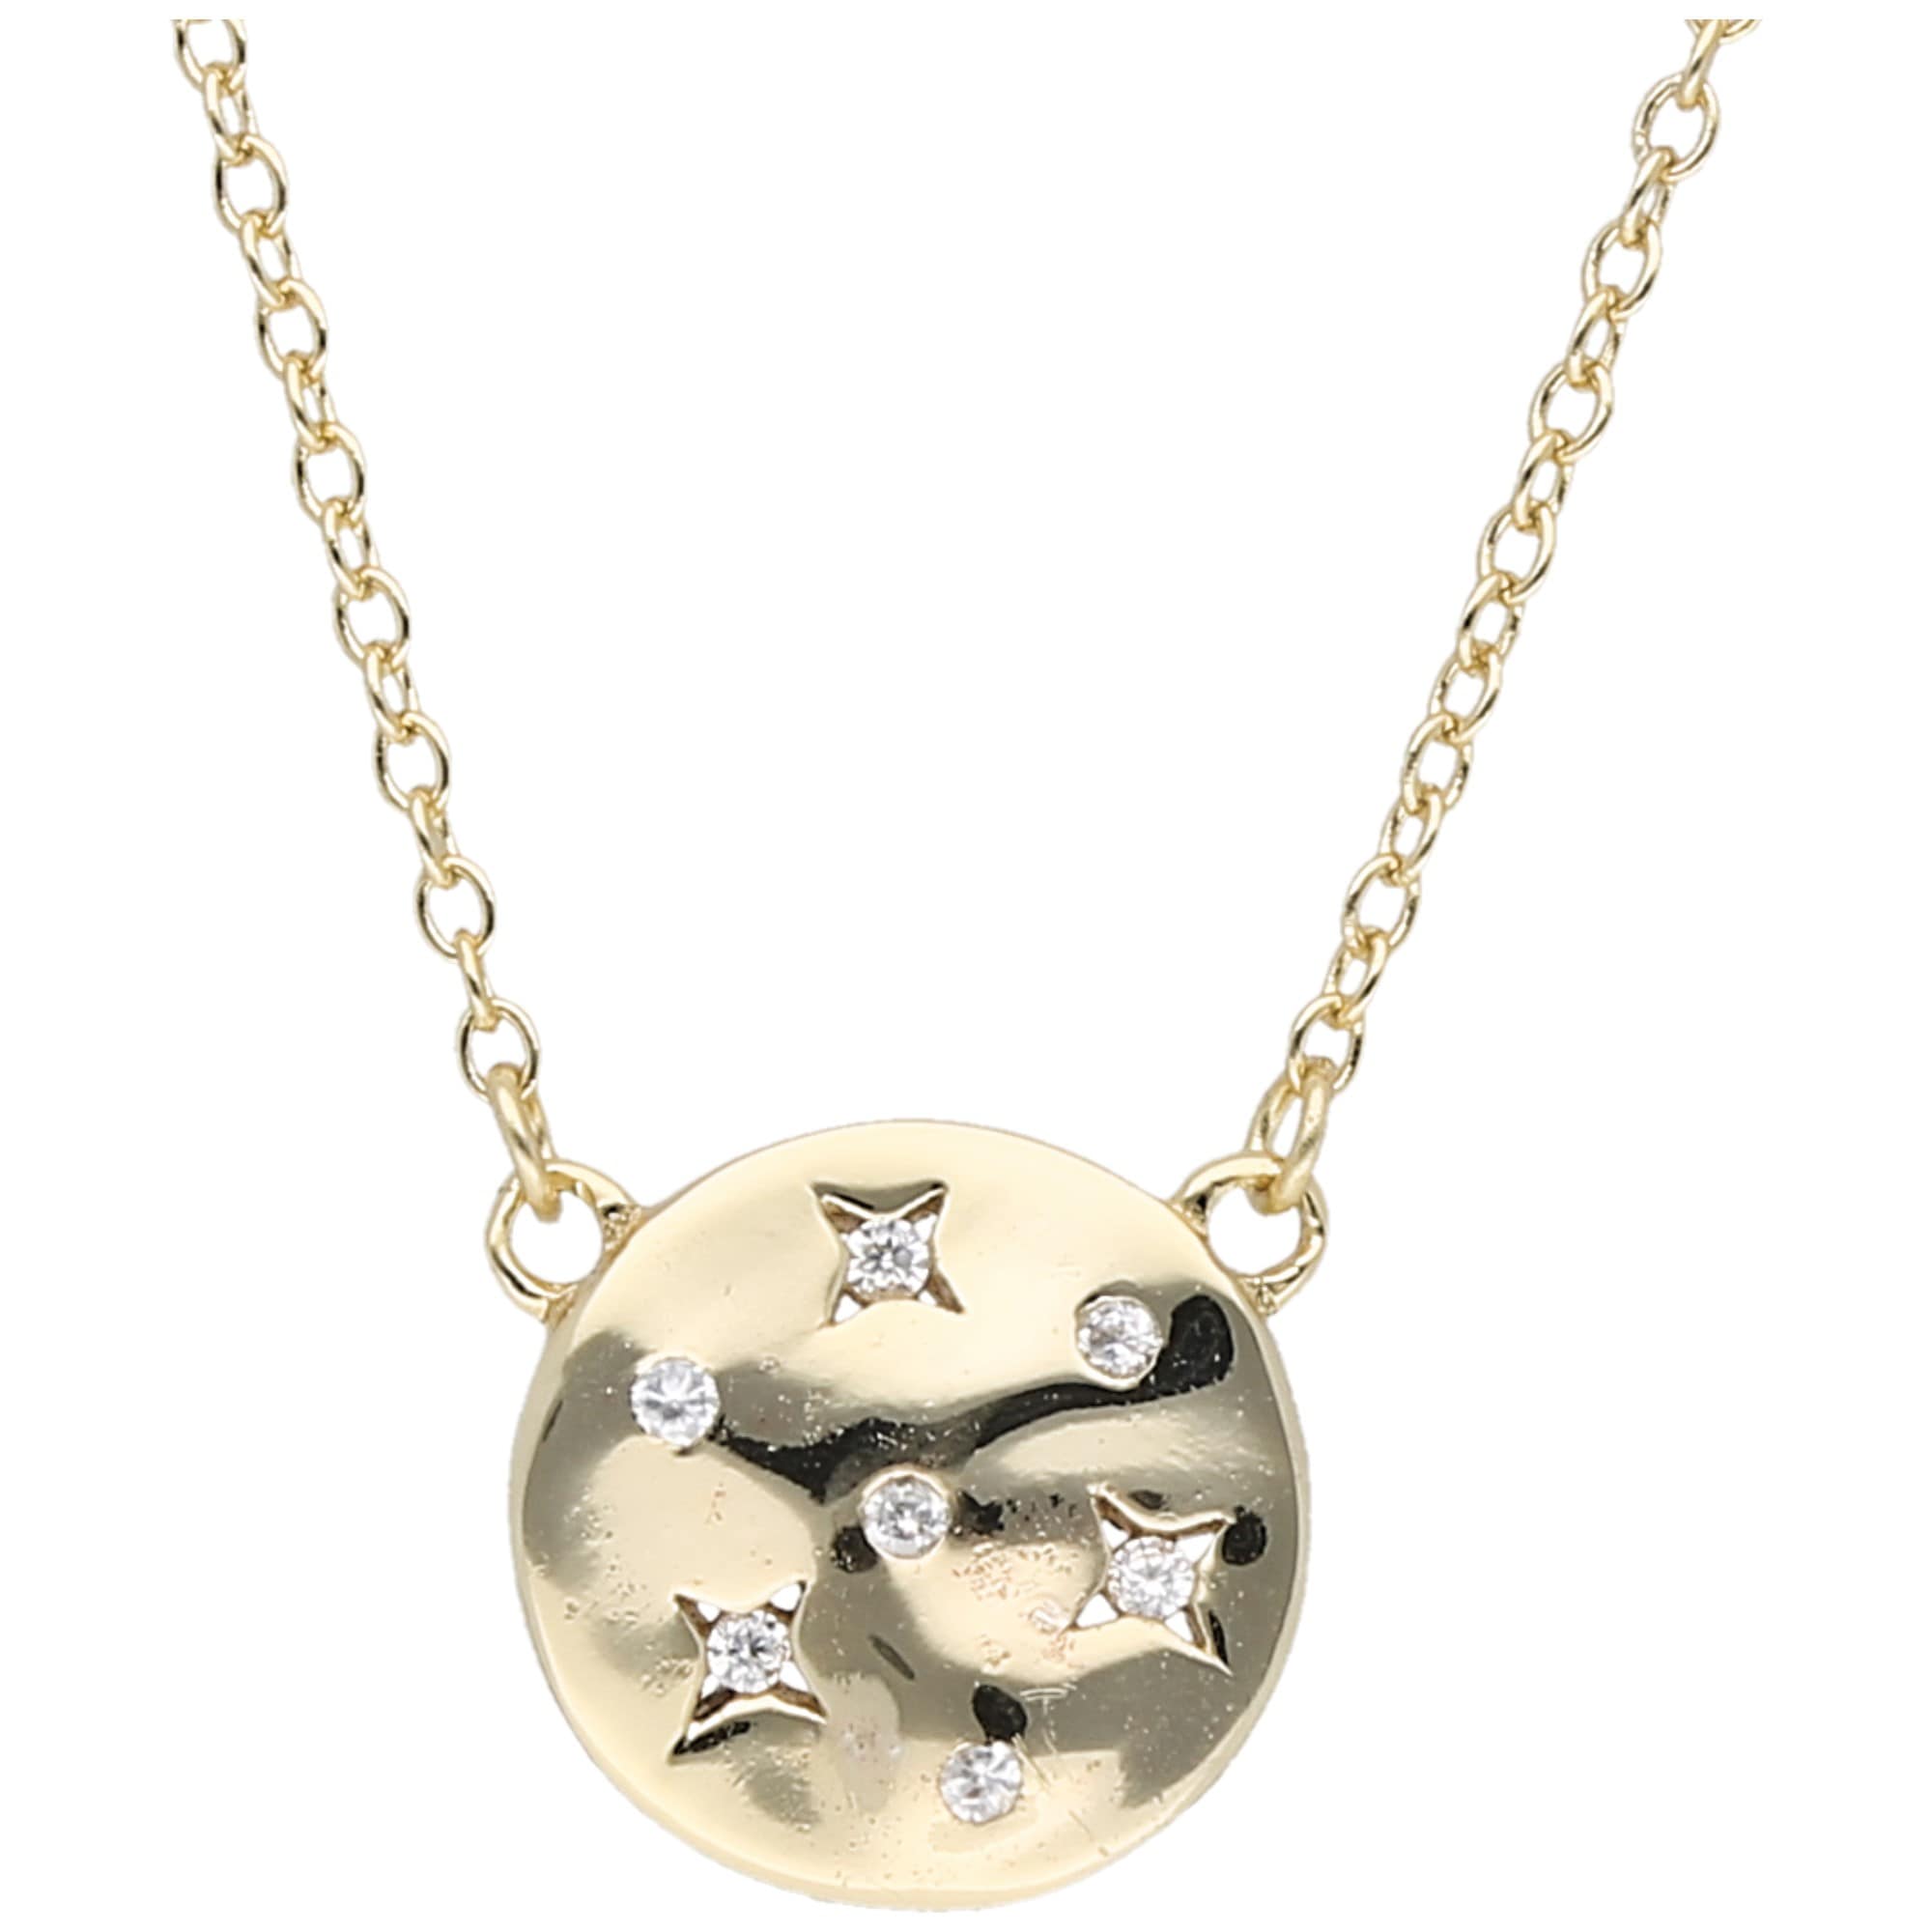 Smart Jewel Collier mit 925 Silber Zirkonia Steinen vergoldet rund